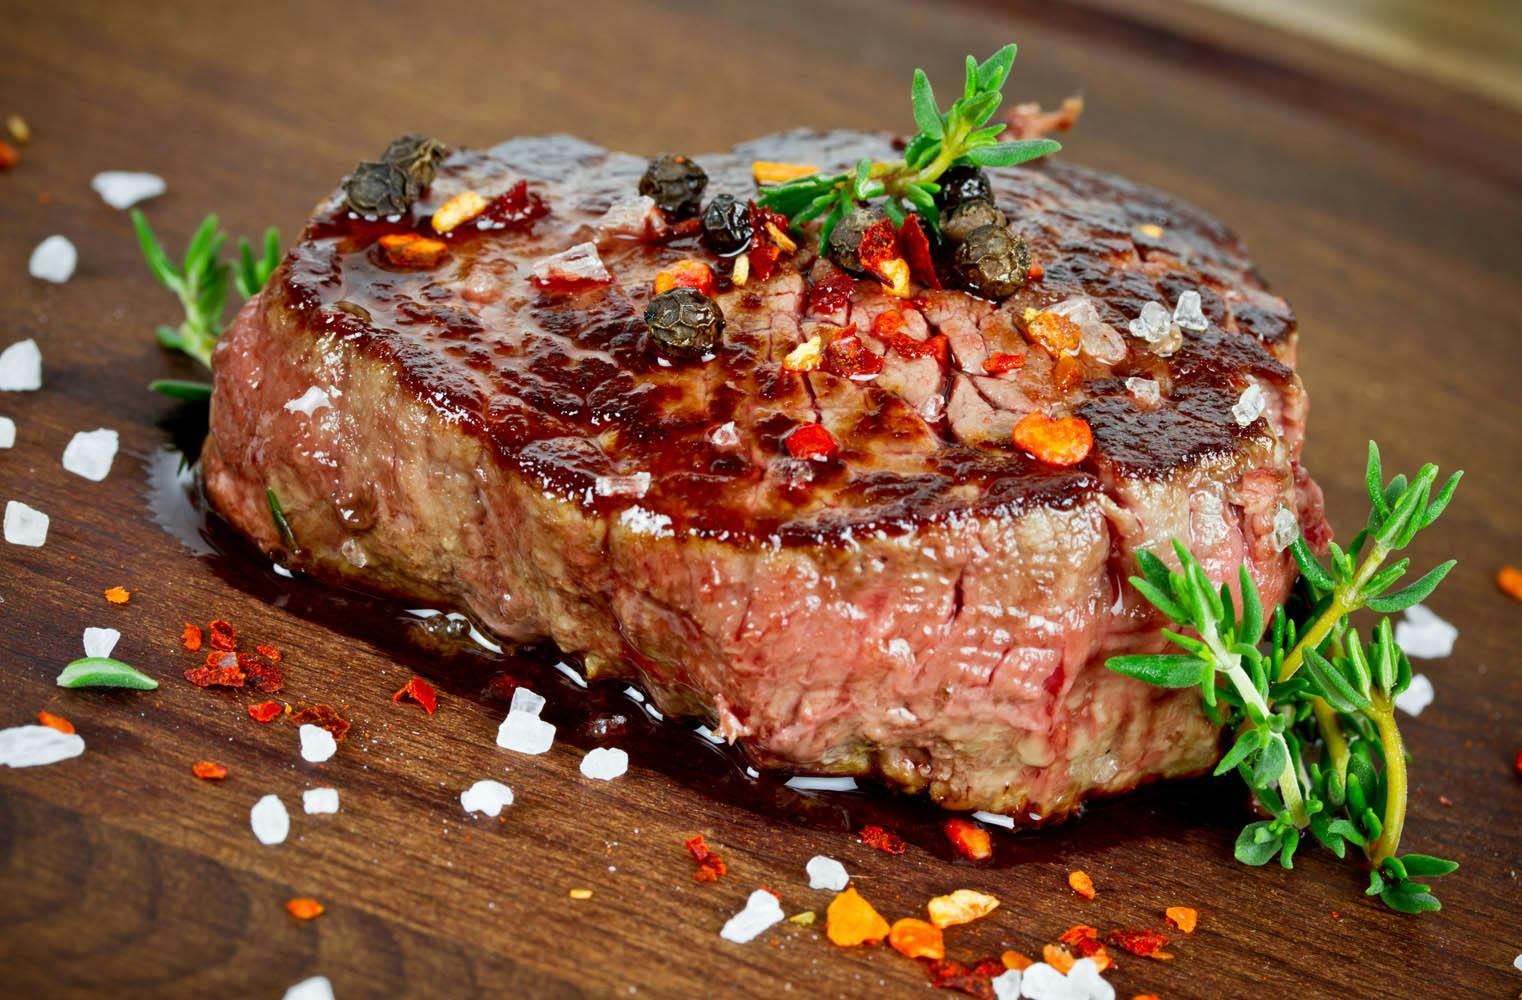 Grillkochkurs | das perfekte Steak | Fleisch richtig grillen